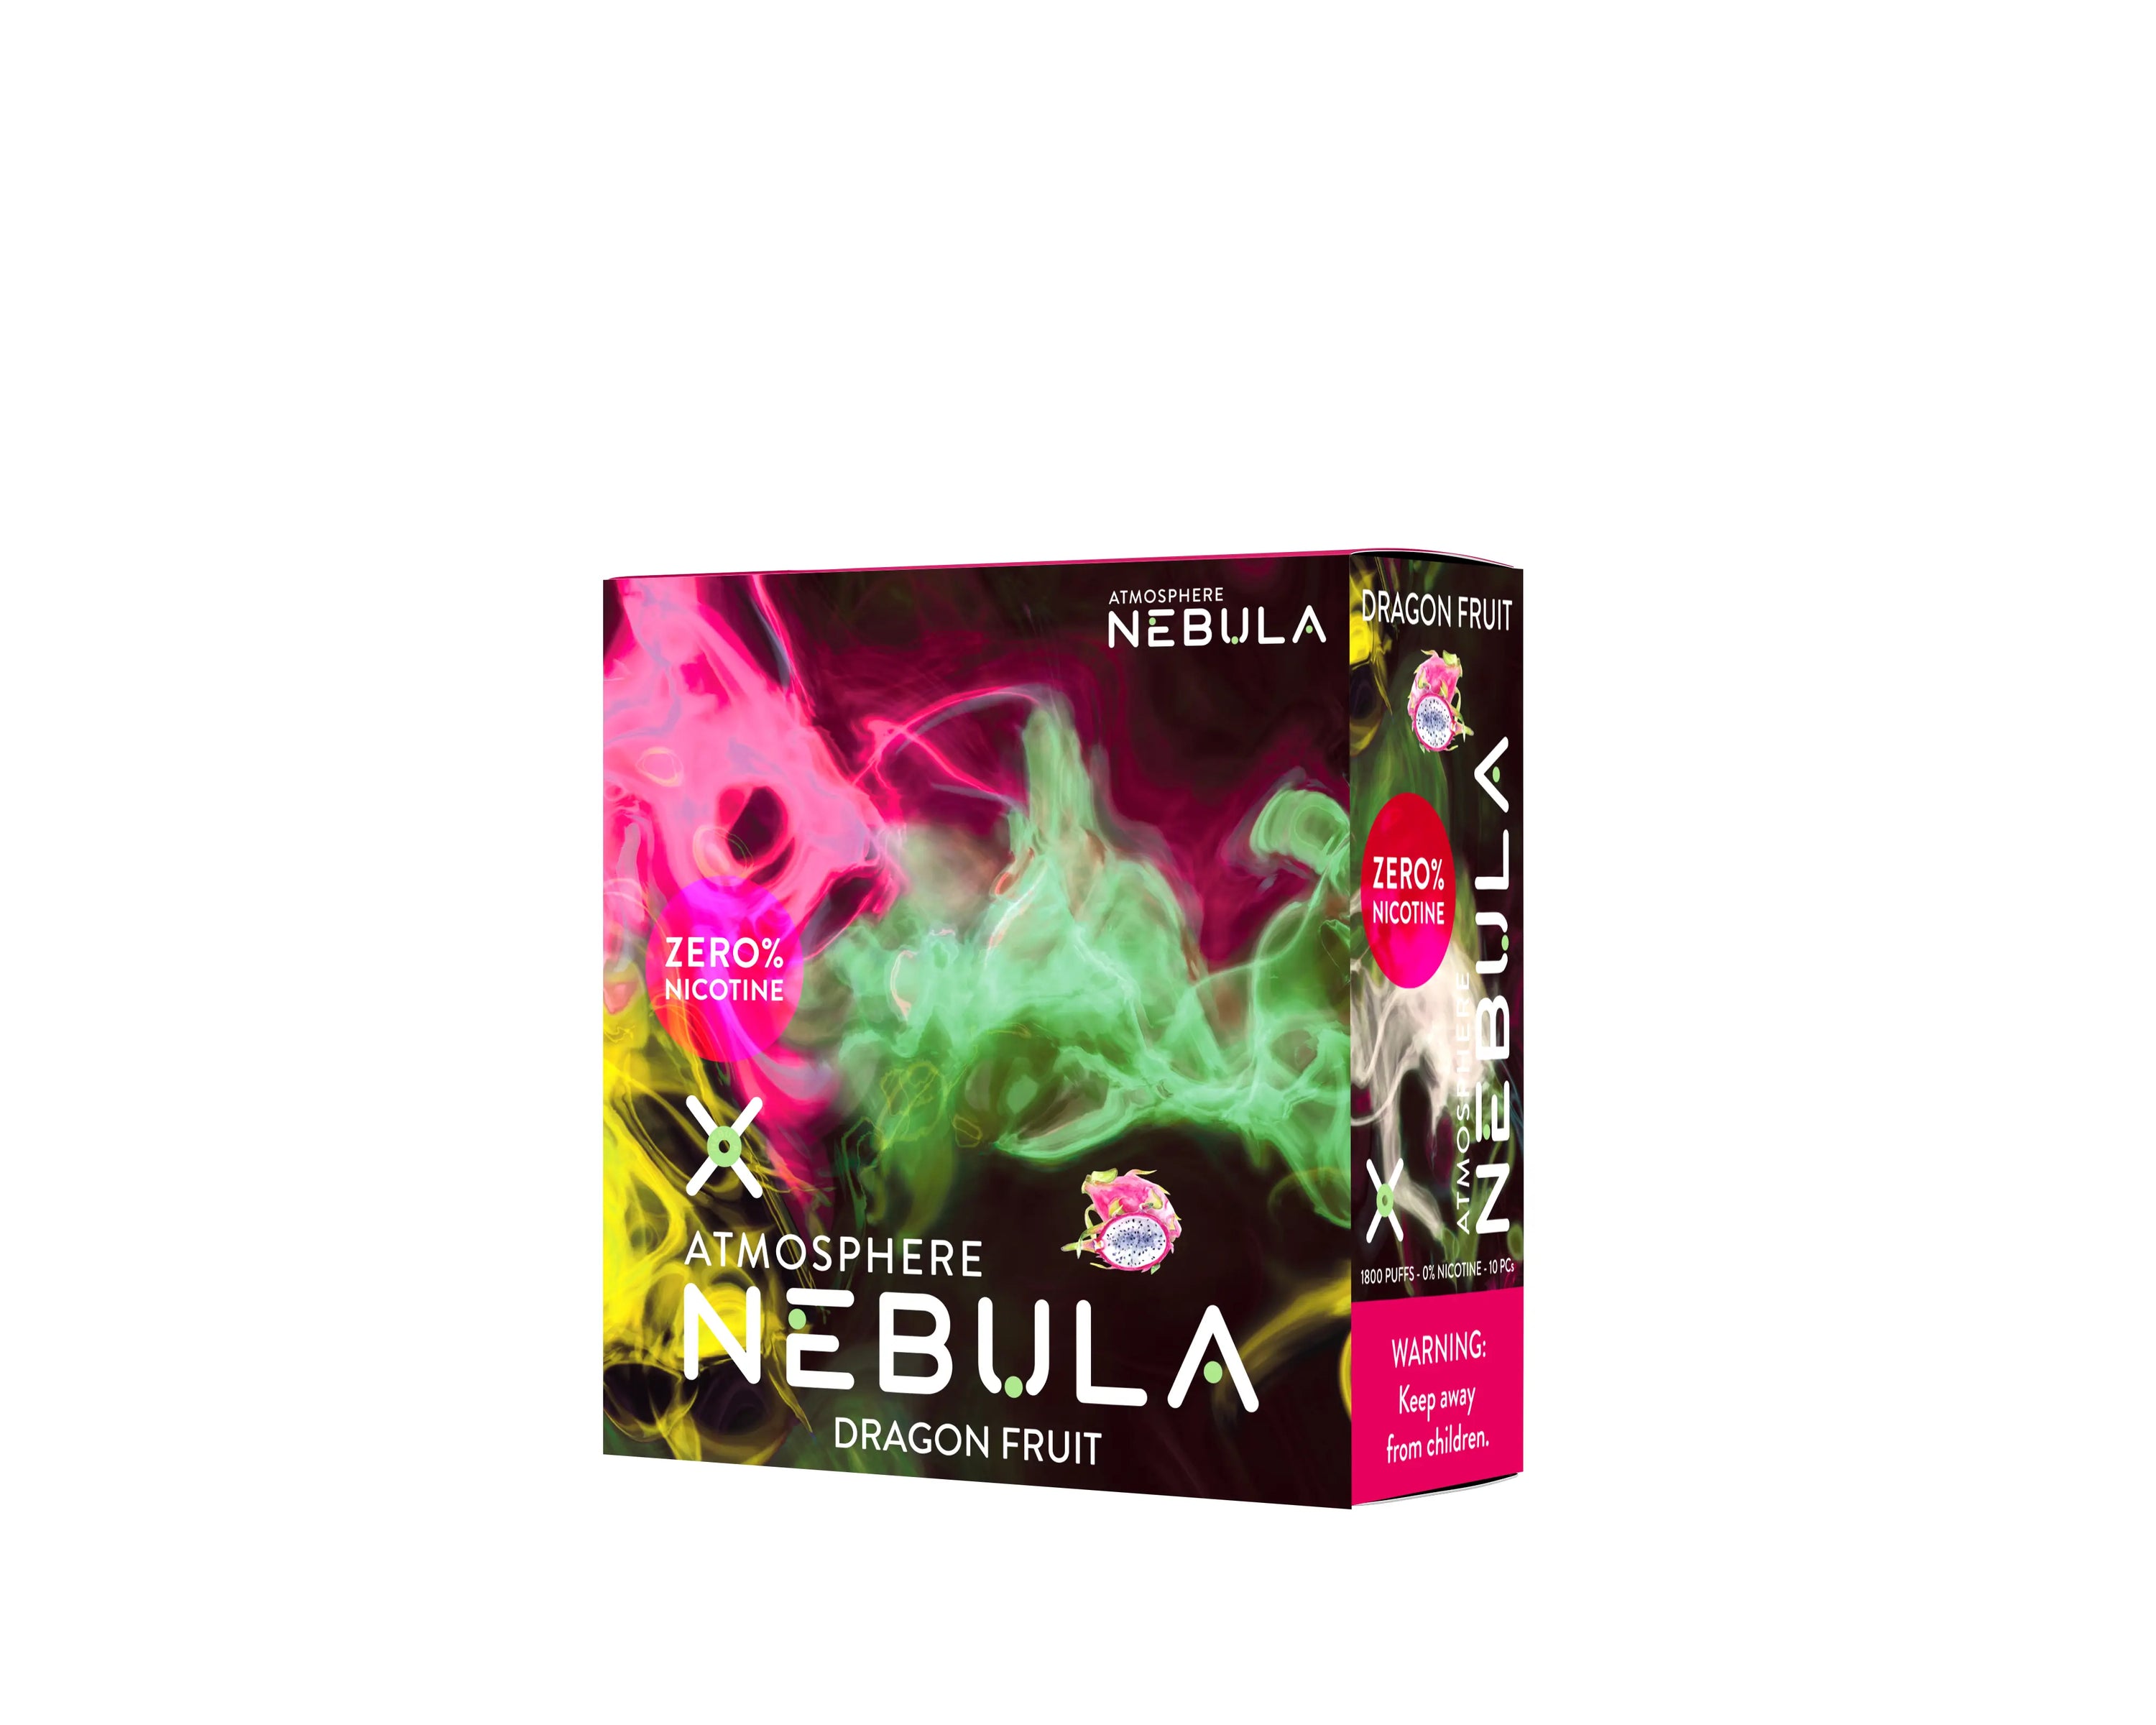 Nebula Atmosphere 0% 1800 Puffs - Dragon Fruit - B2B Nebula